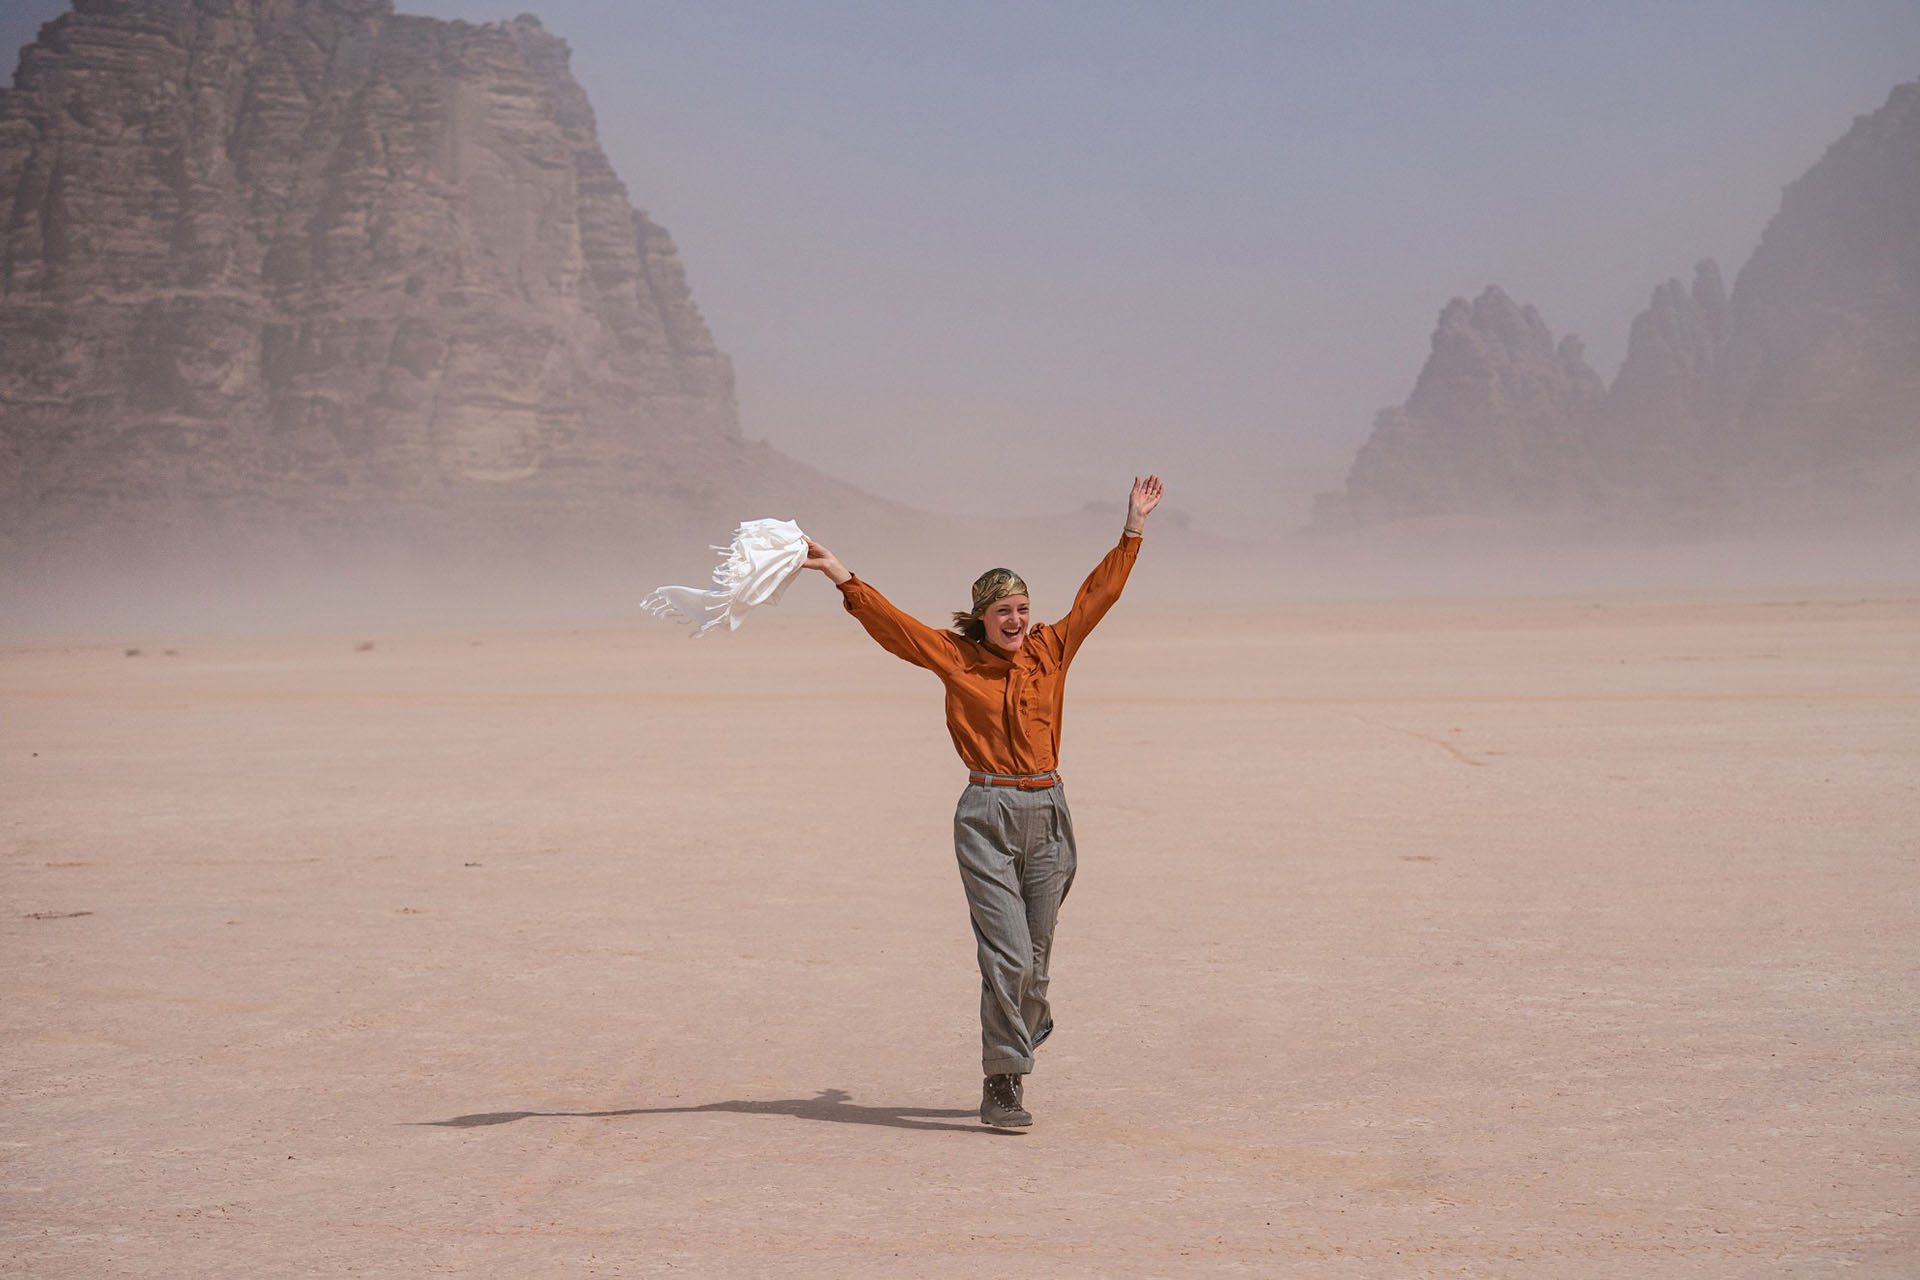 شادمانی ویکی کریپس میان صحرا در فیلم سفر به‌صحرا